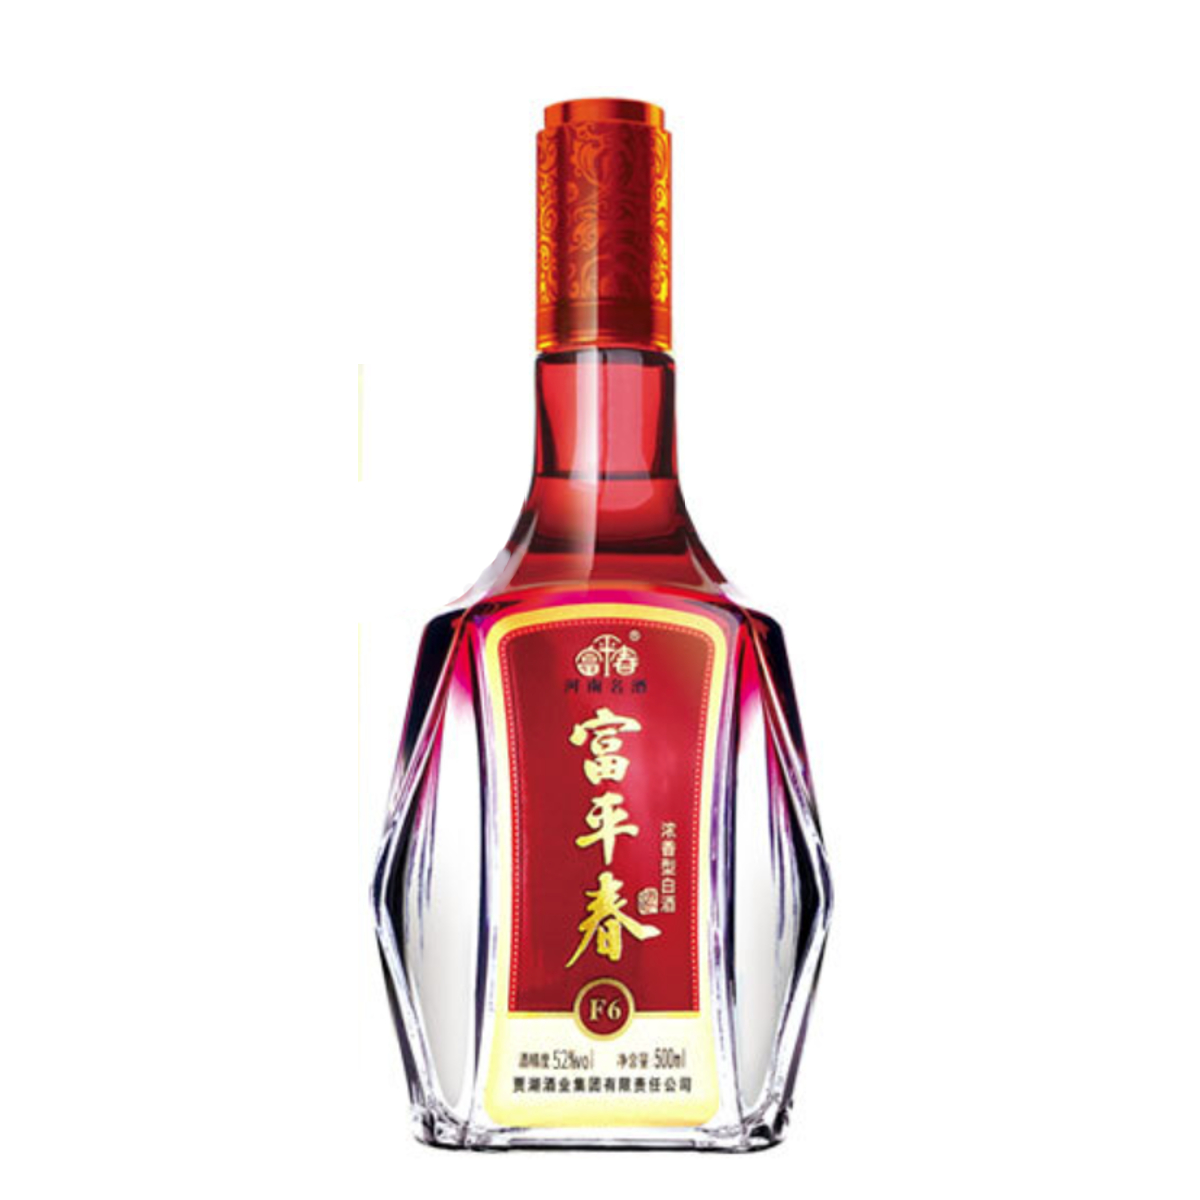 富平春 F6 浓香型白酒 500ml52度 (Fùpíngchūn F6 Nóngxiāng Xíng Báijiǔ 500ml 52 Dù)